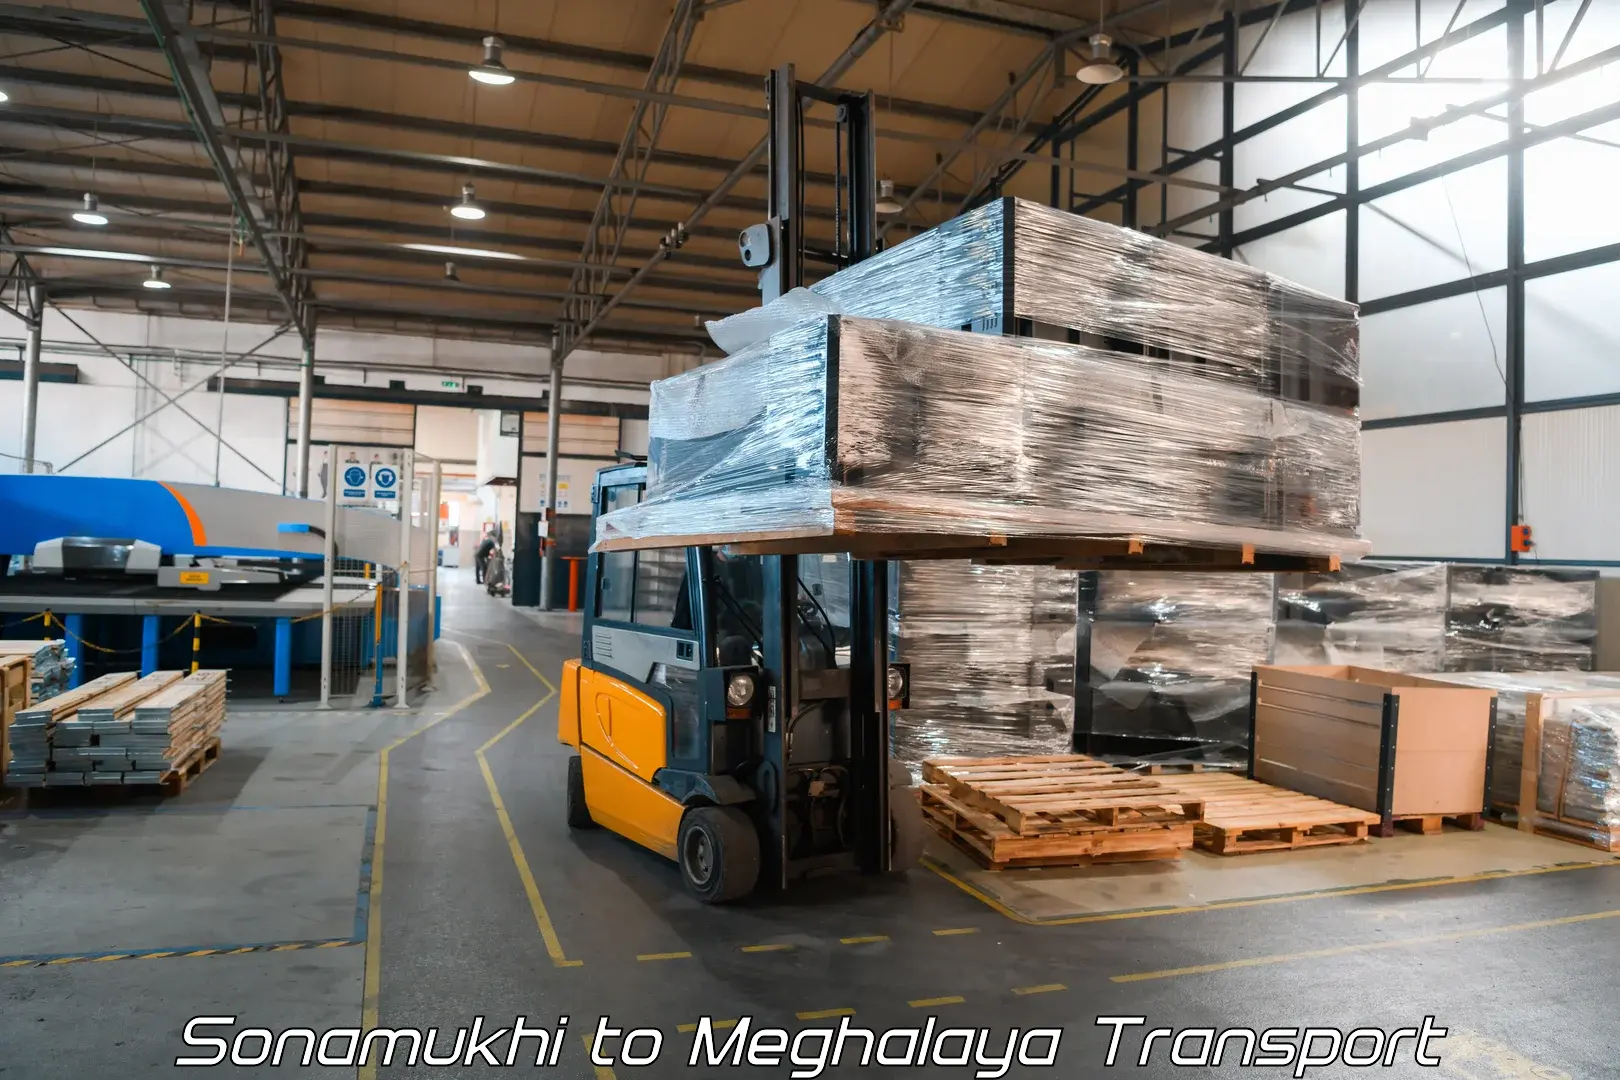 Cargo train transport services Sonamukhi to Meghalaya